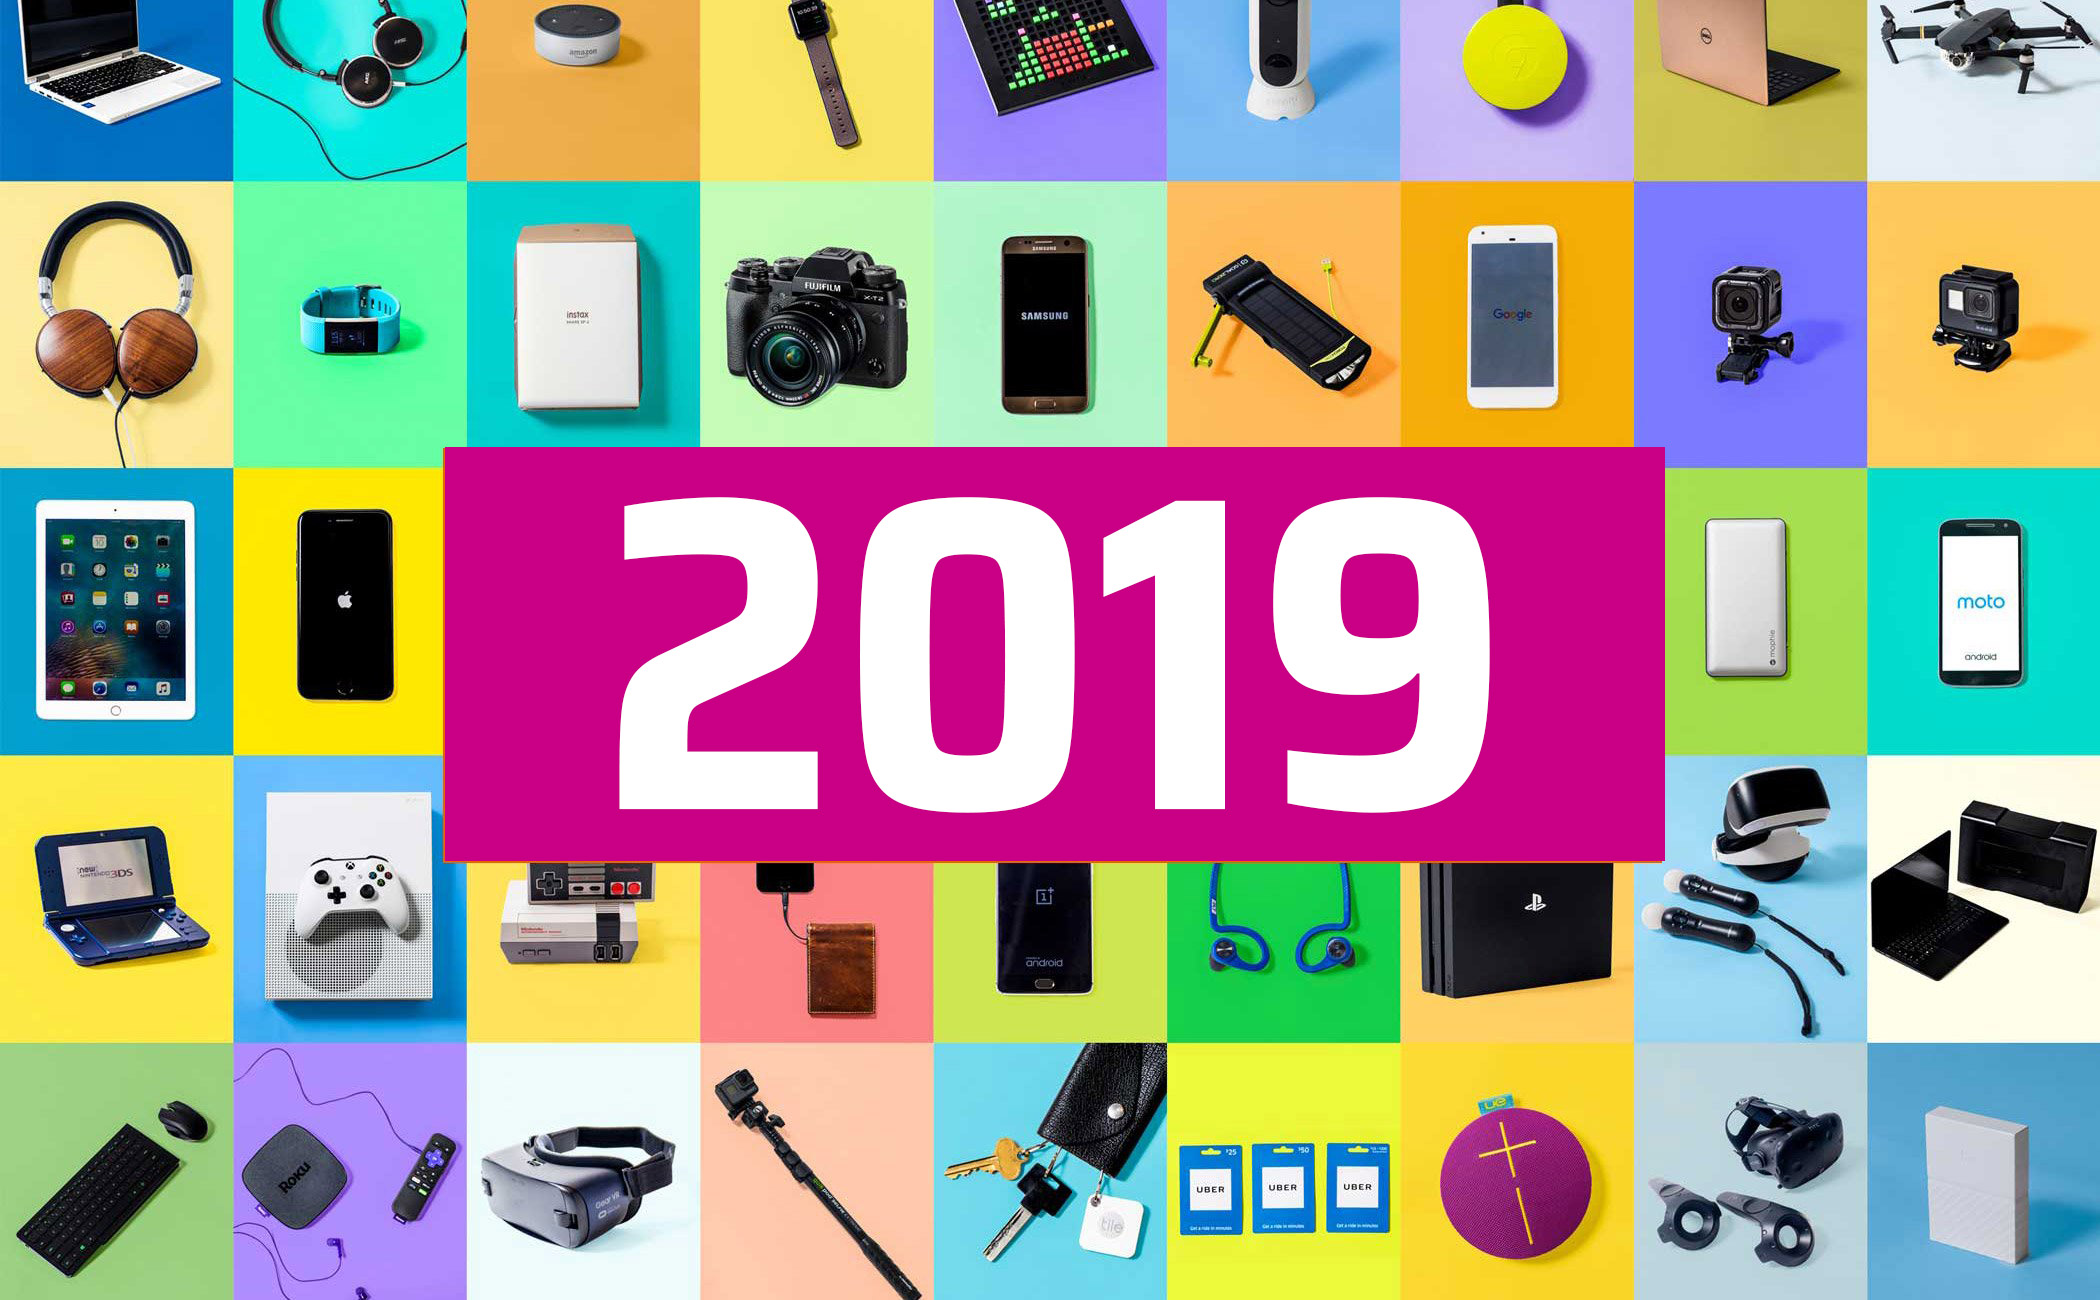 Năm 2019 anh em đã mua những món đồ công nghệ gì rồi? Anh em thích cái nào nhất?